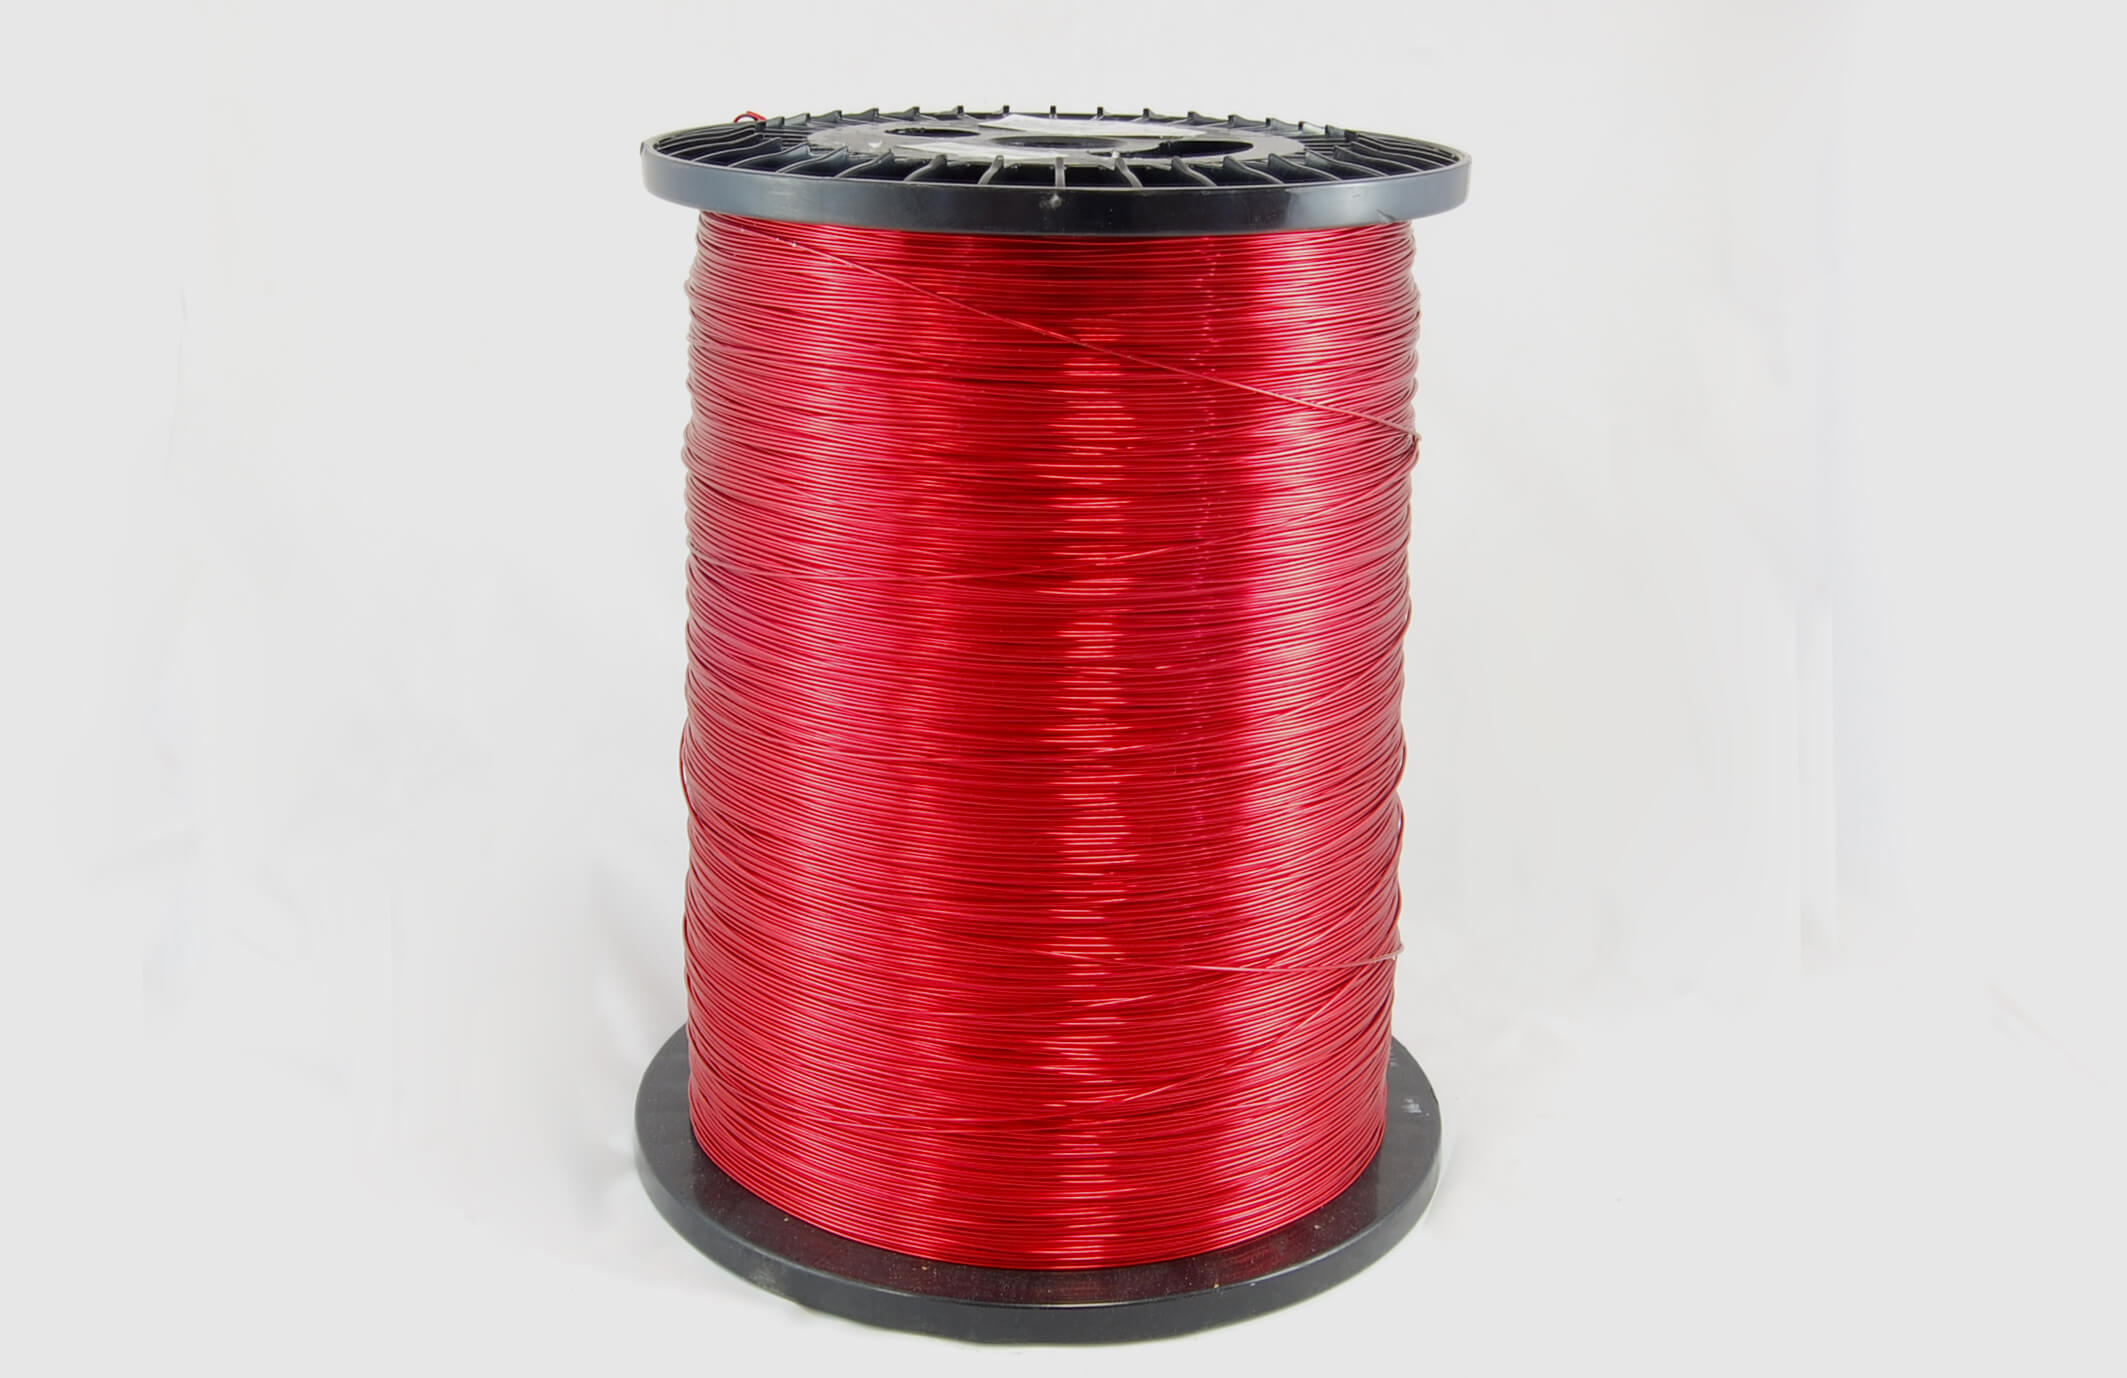 #20 Single Nysol  Round SNSR MW 80 Copper Magnet Wire 155°C, red, 85 LB box (average wght.)